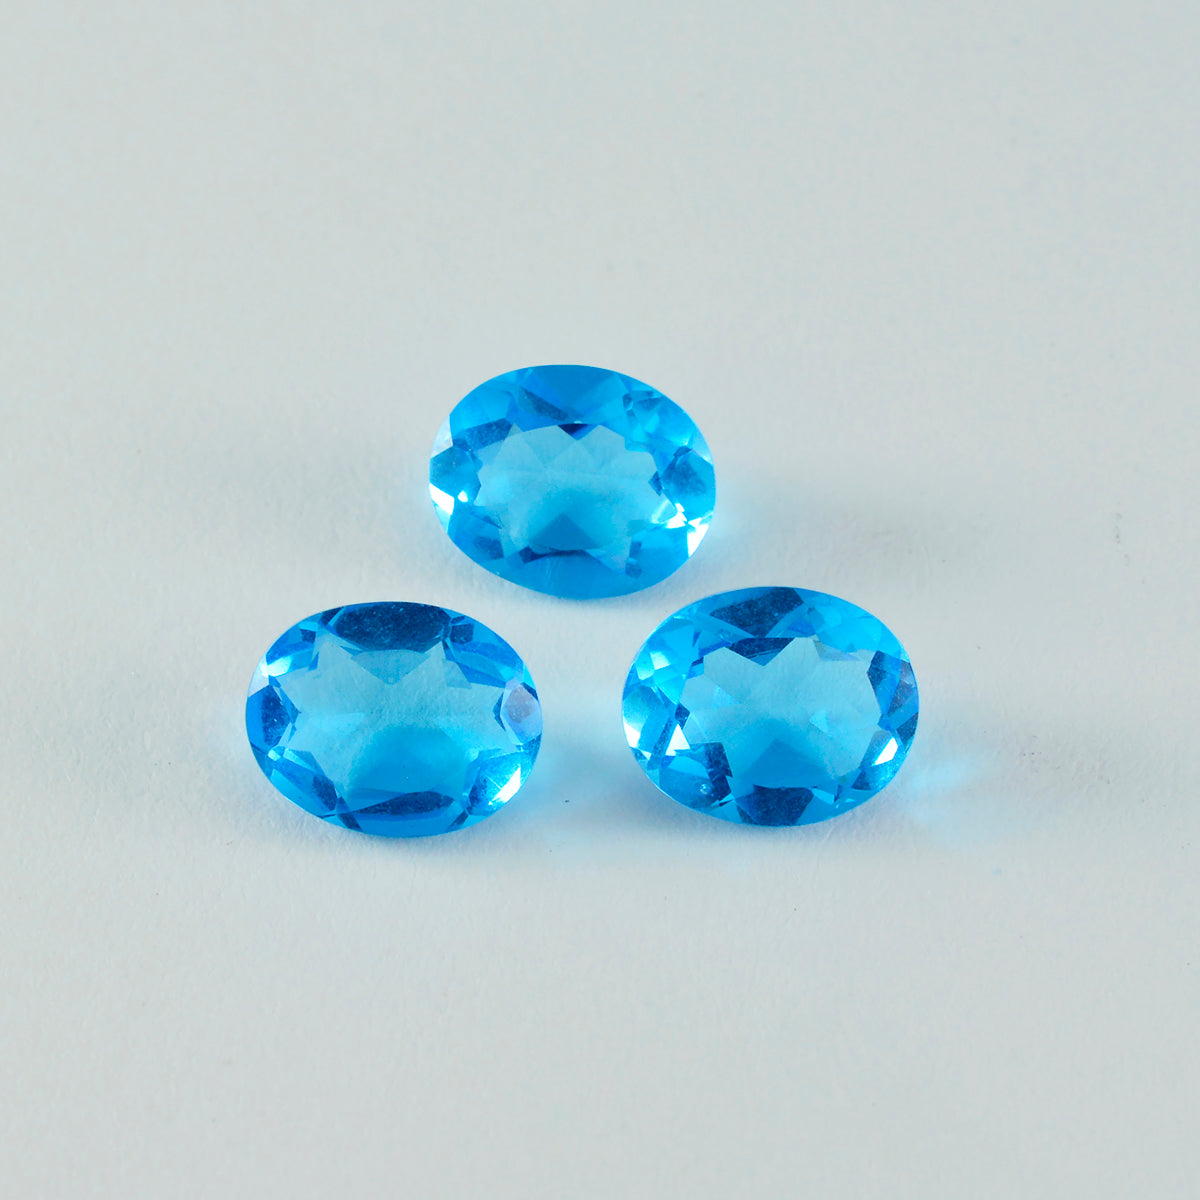 riyogems 1шт синий топаз cz ограненный 10x14 мм овальная форма красивый качественный свободный драгоценный камень